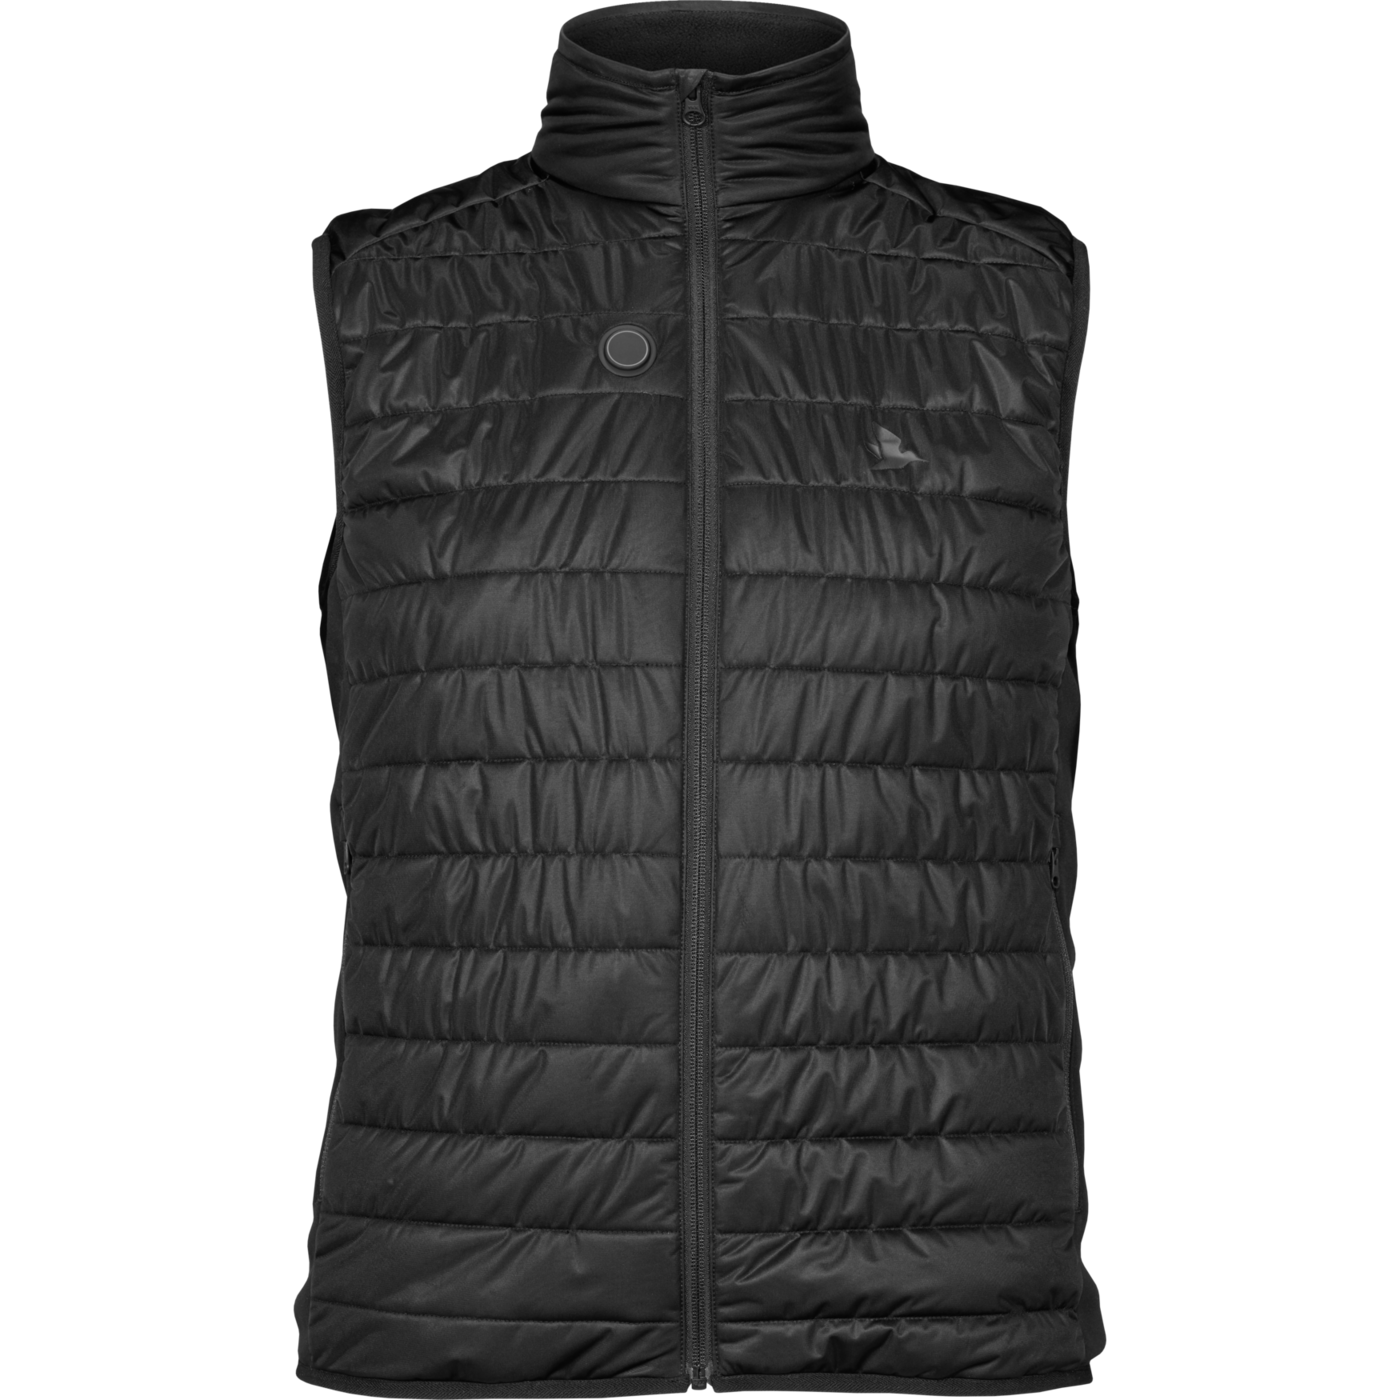 Seeland Heat vest - Black - 3XL thumbnail